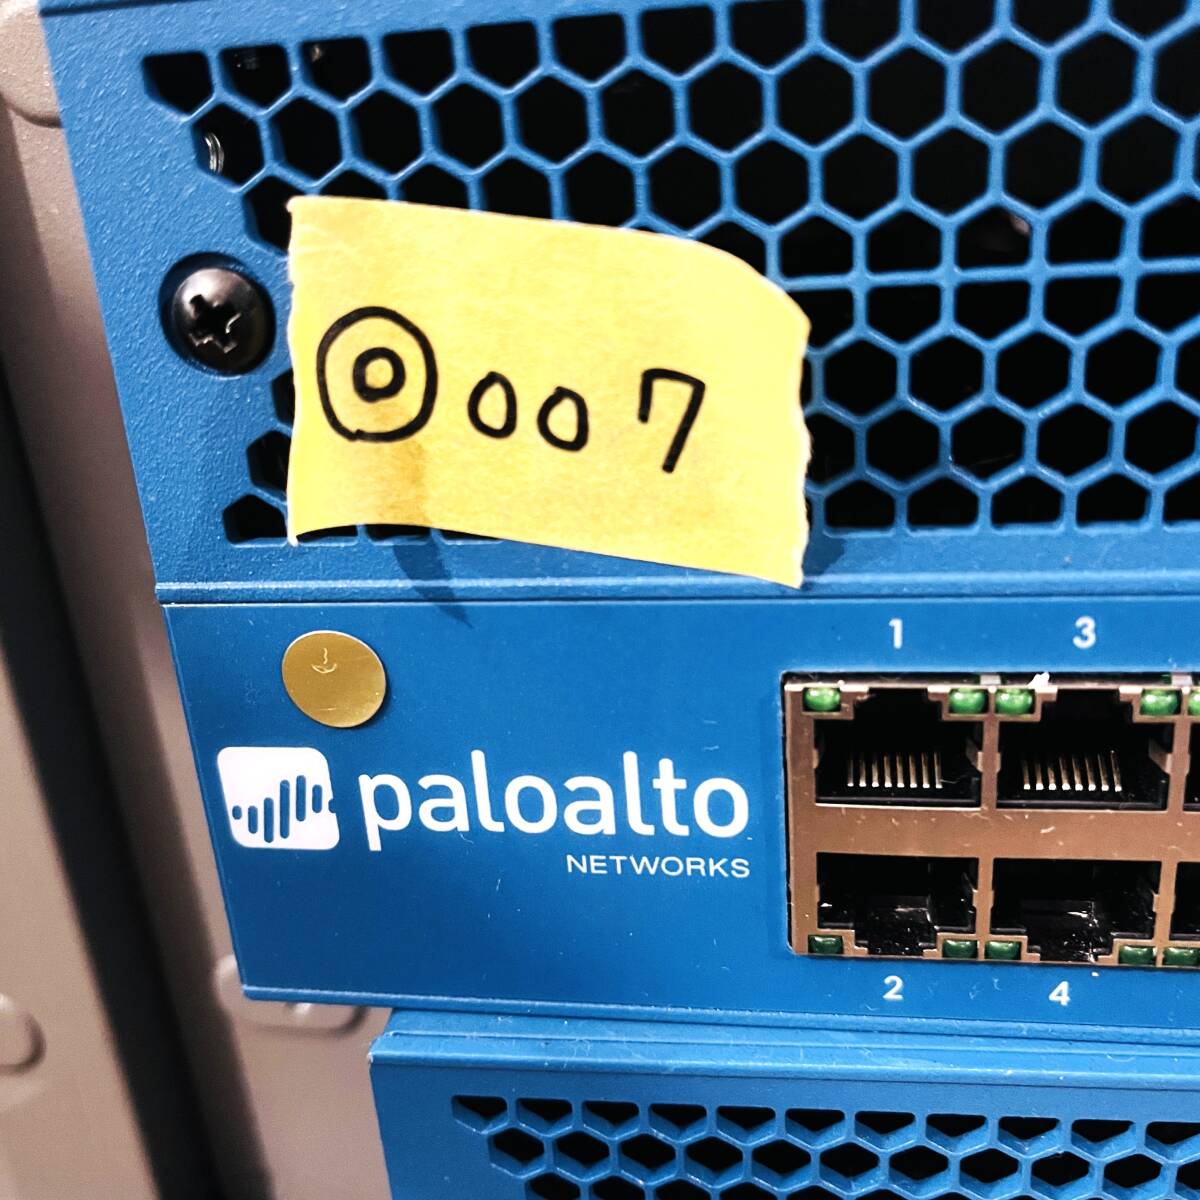 ◎007【通電OK】 Palo alto PA-3220 ファイアウォール FW セキュリティ ルーティング IPv6 IPsec VPN VLAN パロアルト ネットワーク_画像1